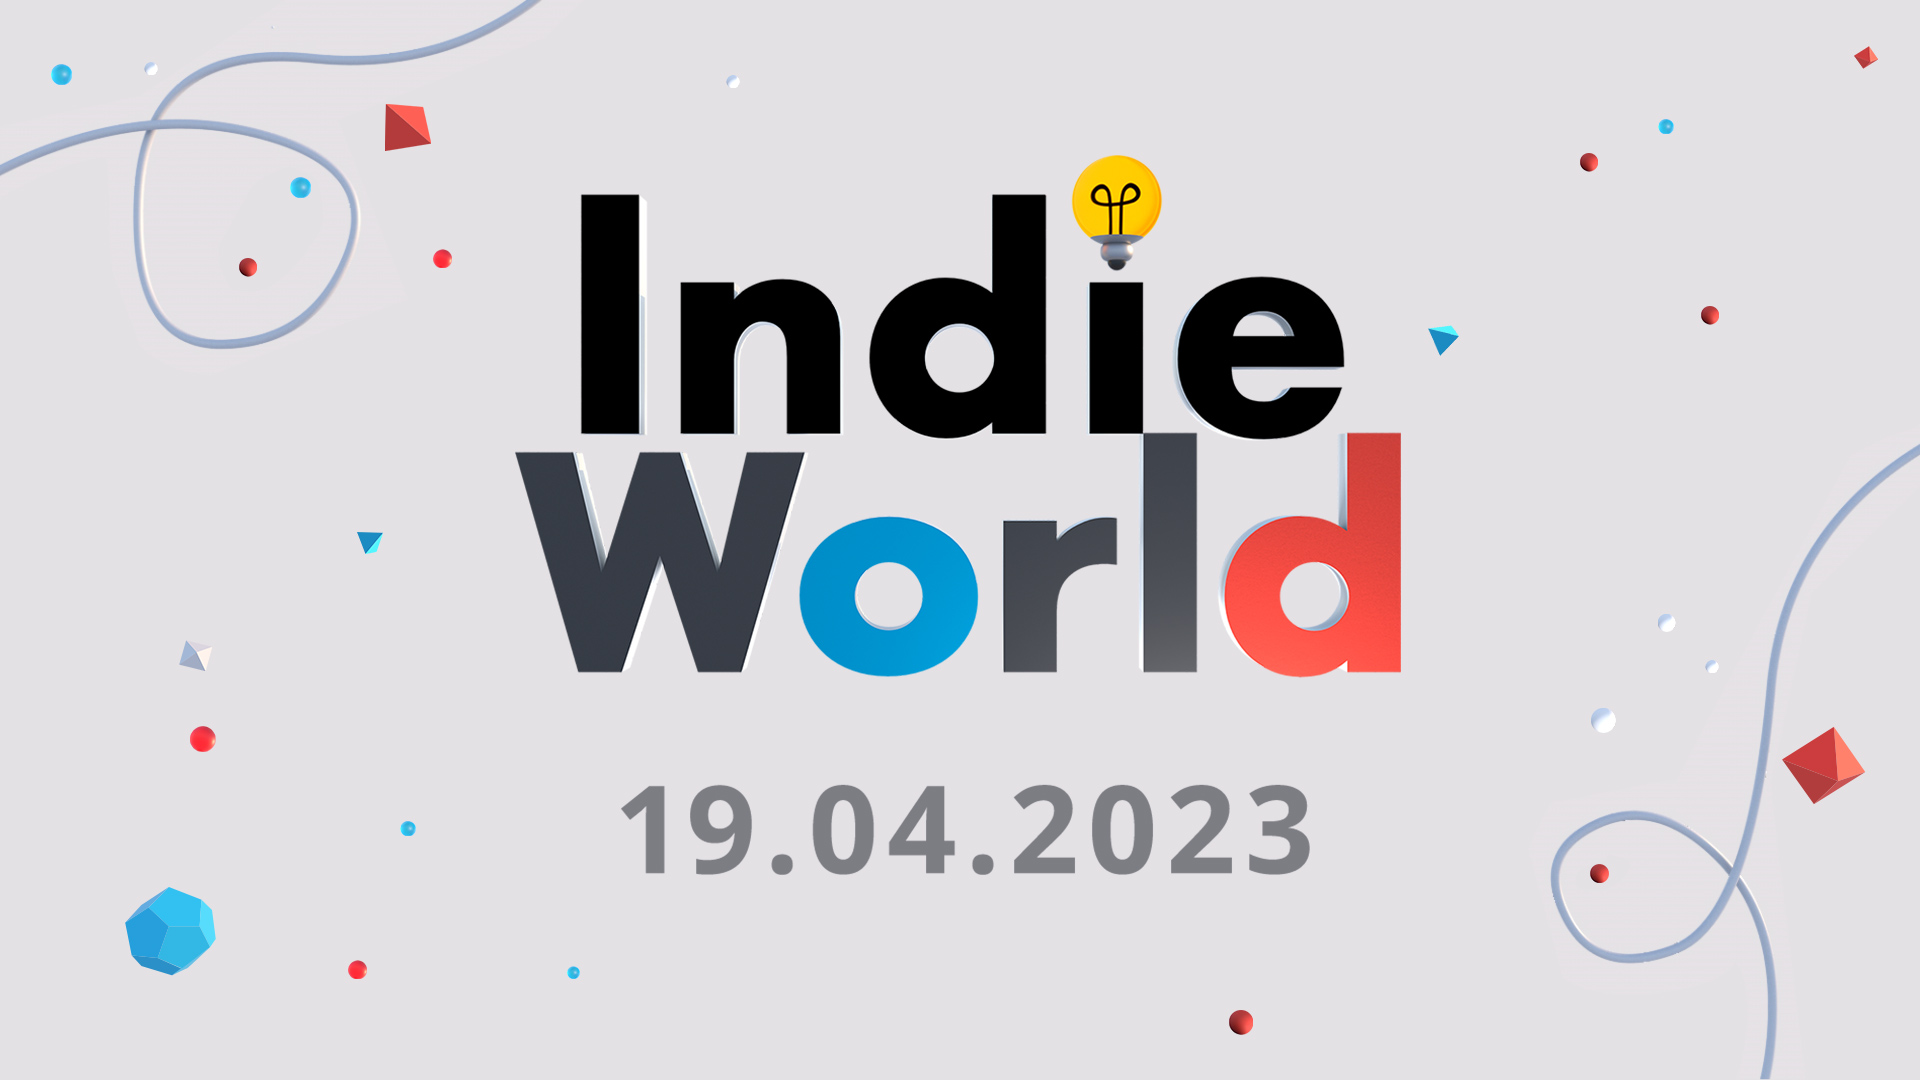 #Nintendo kündigt neue Indie World für Mittwoch an